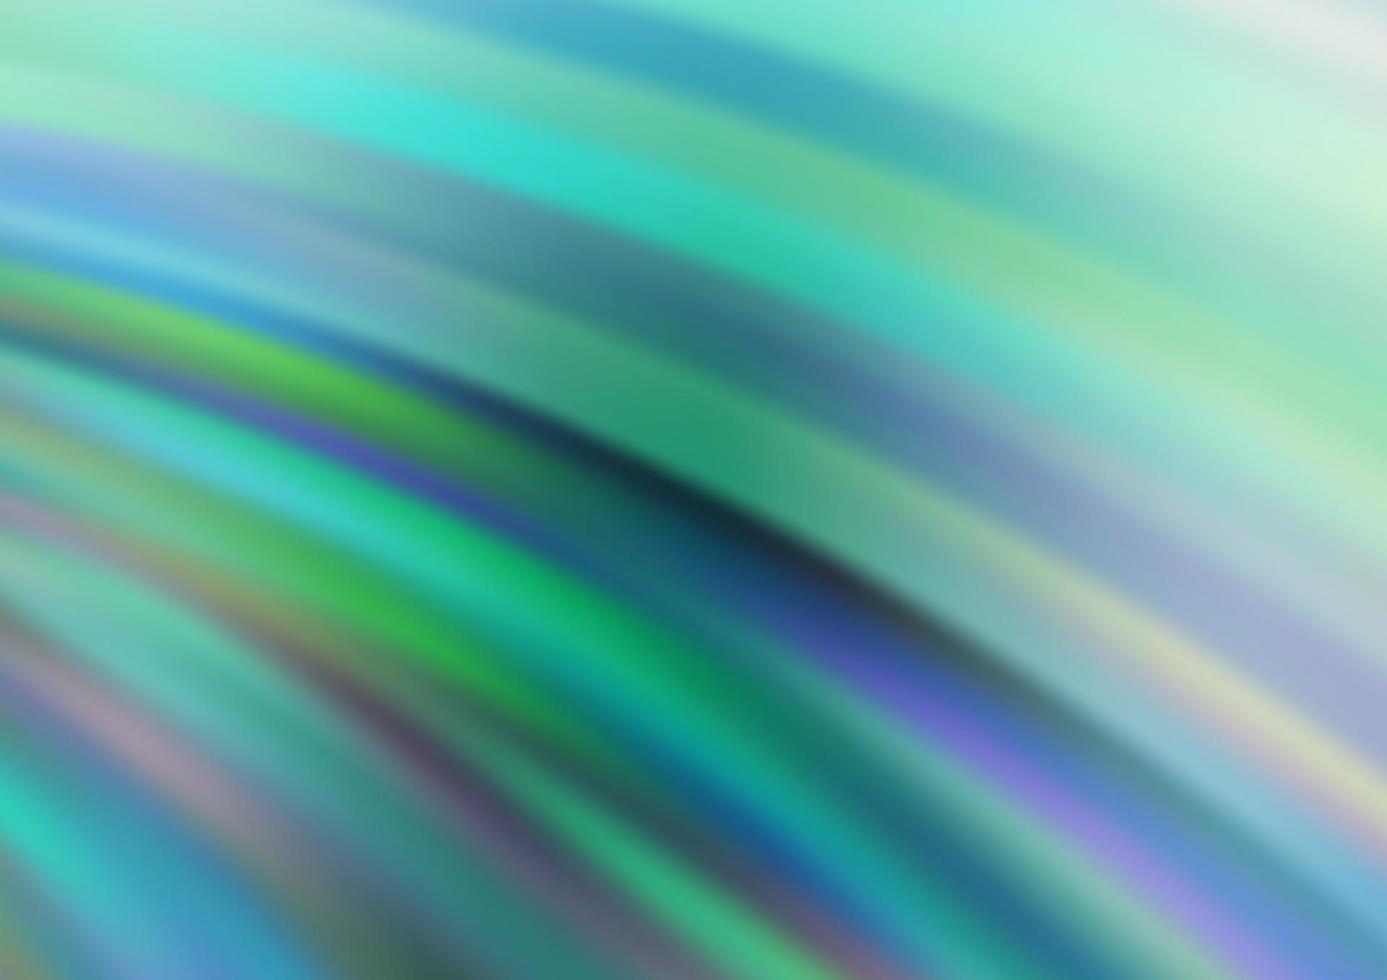 ljusblå, grön vektorbakgrund med böjda cirklar. vektor